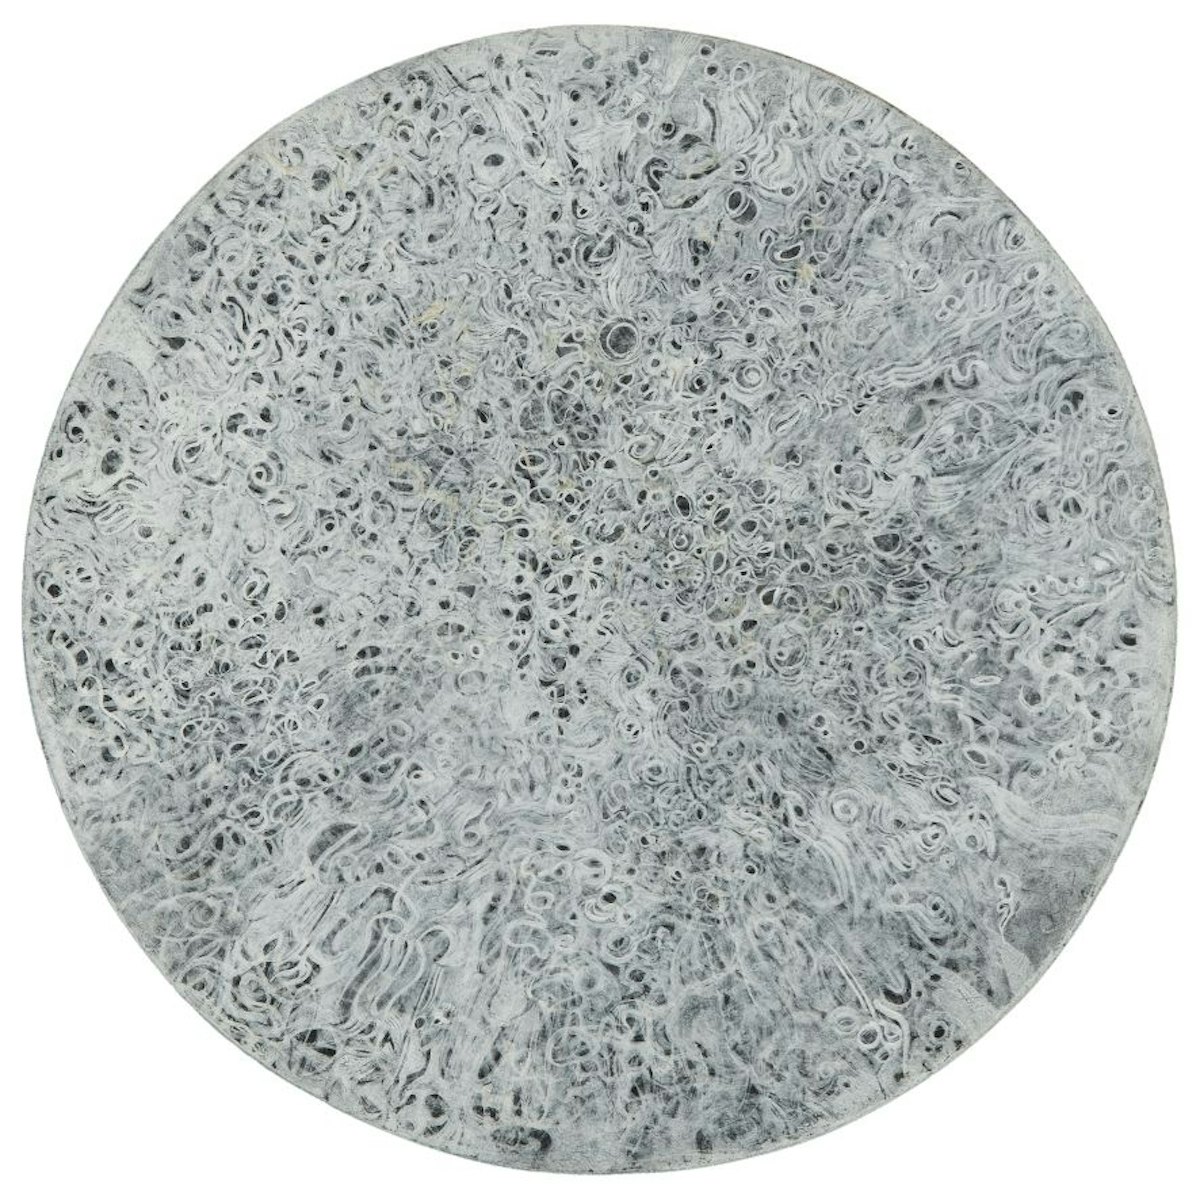 Mark Tobey Mondo (World), 1959 Tempera su cartone diametro 29.8 cm Collezione privata, New York